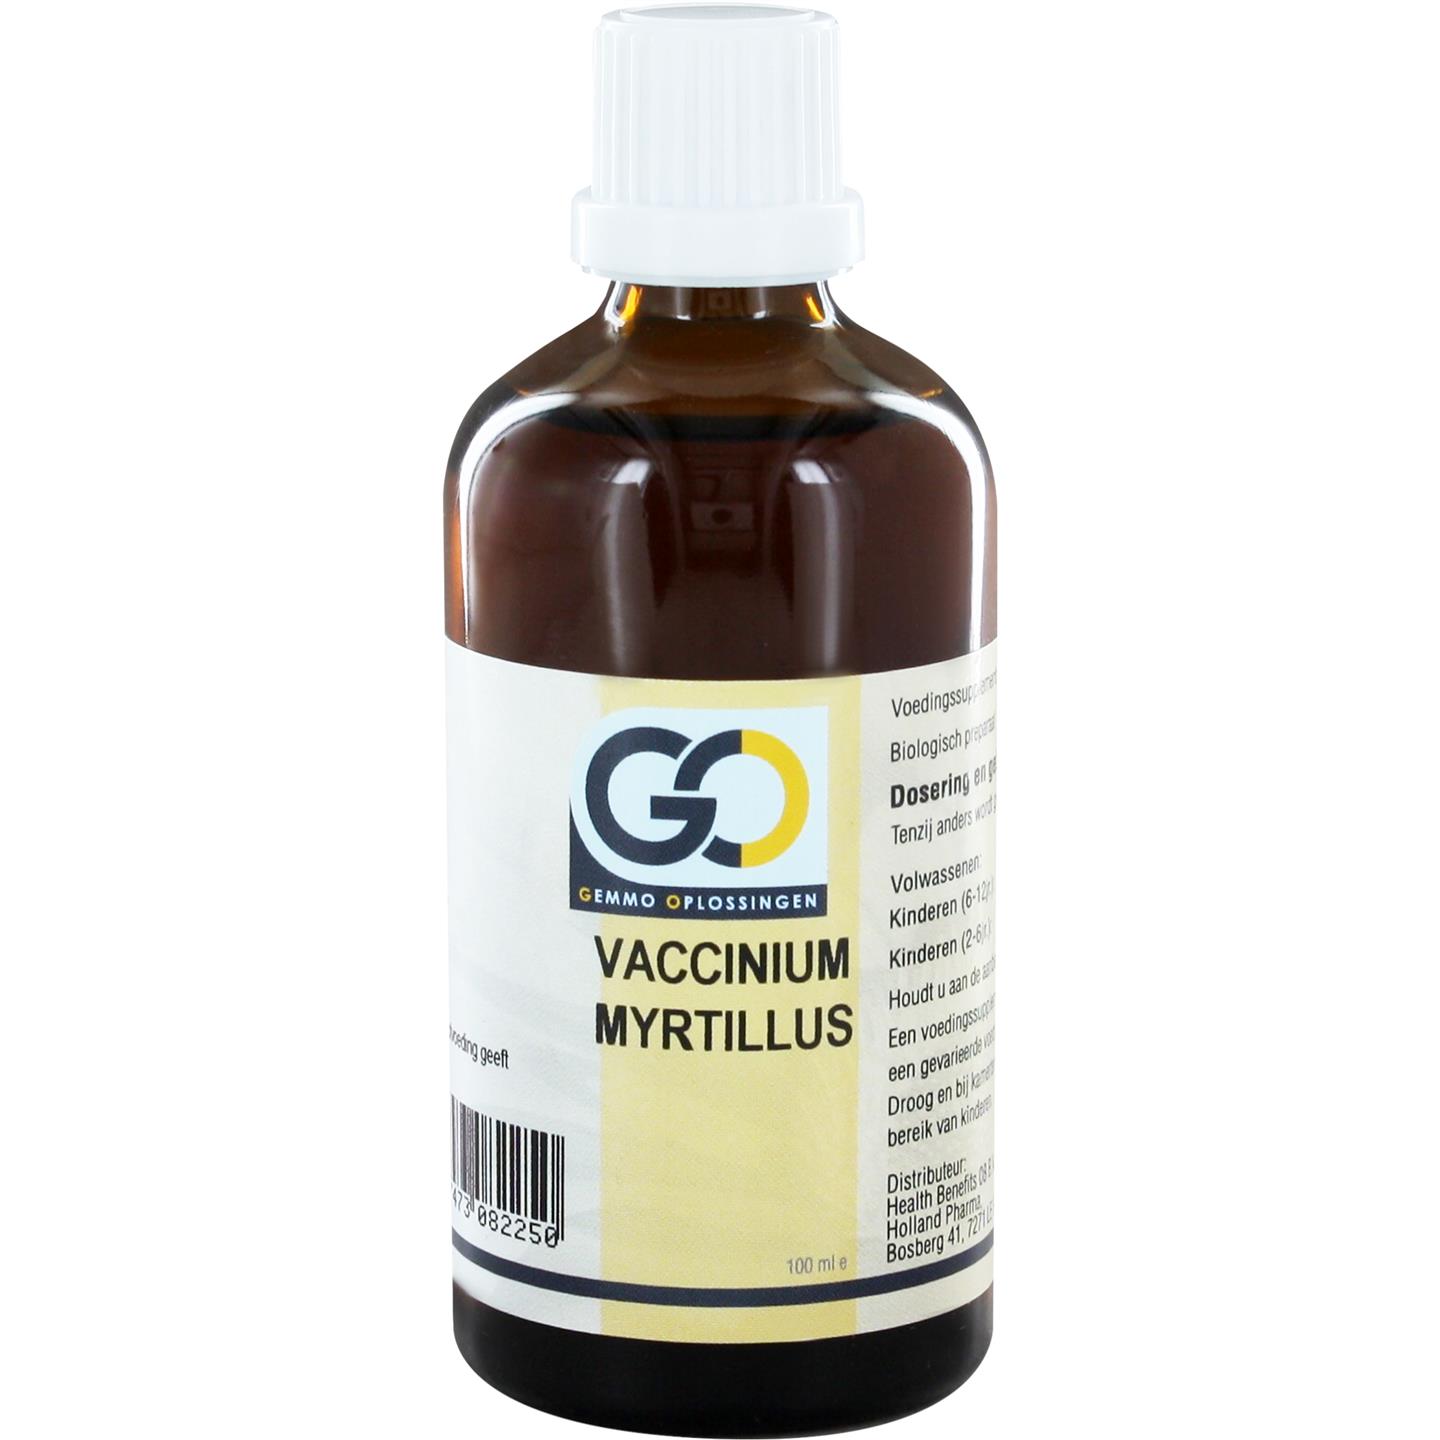 Go Vaccinium Myrtyllus 100ml